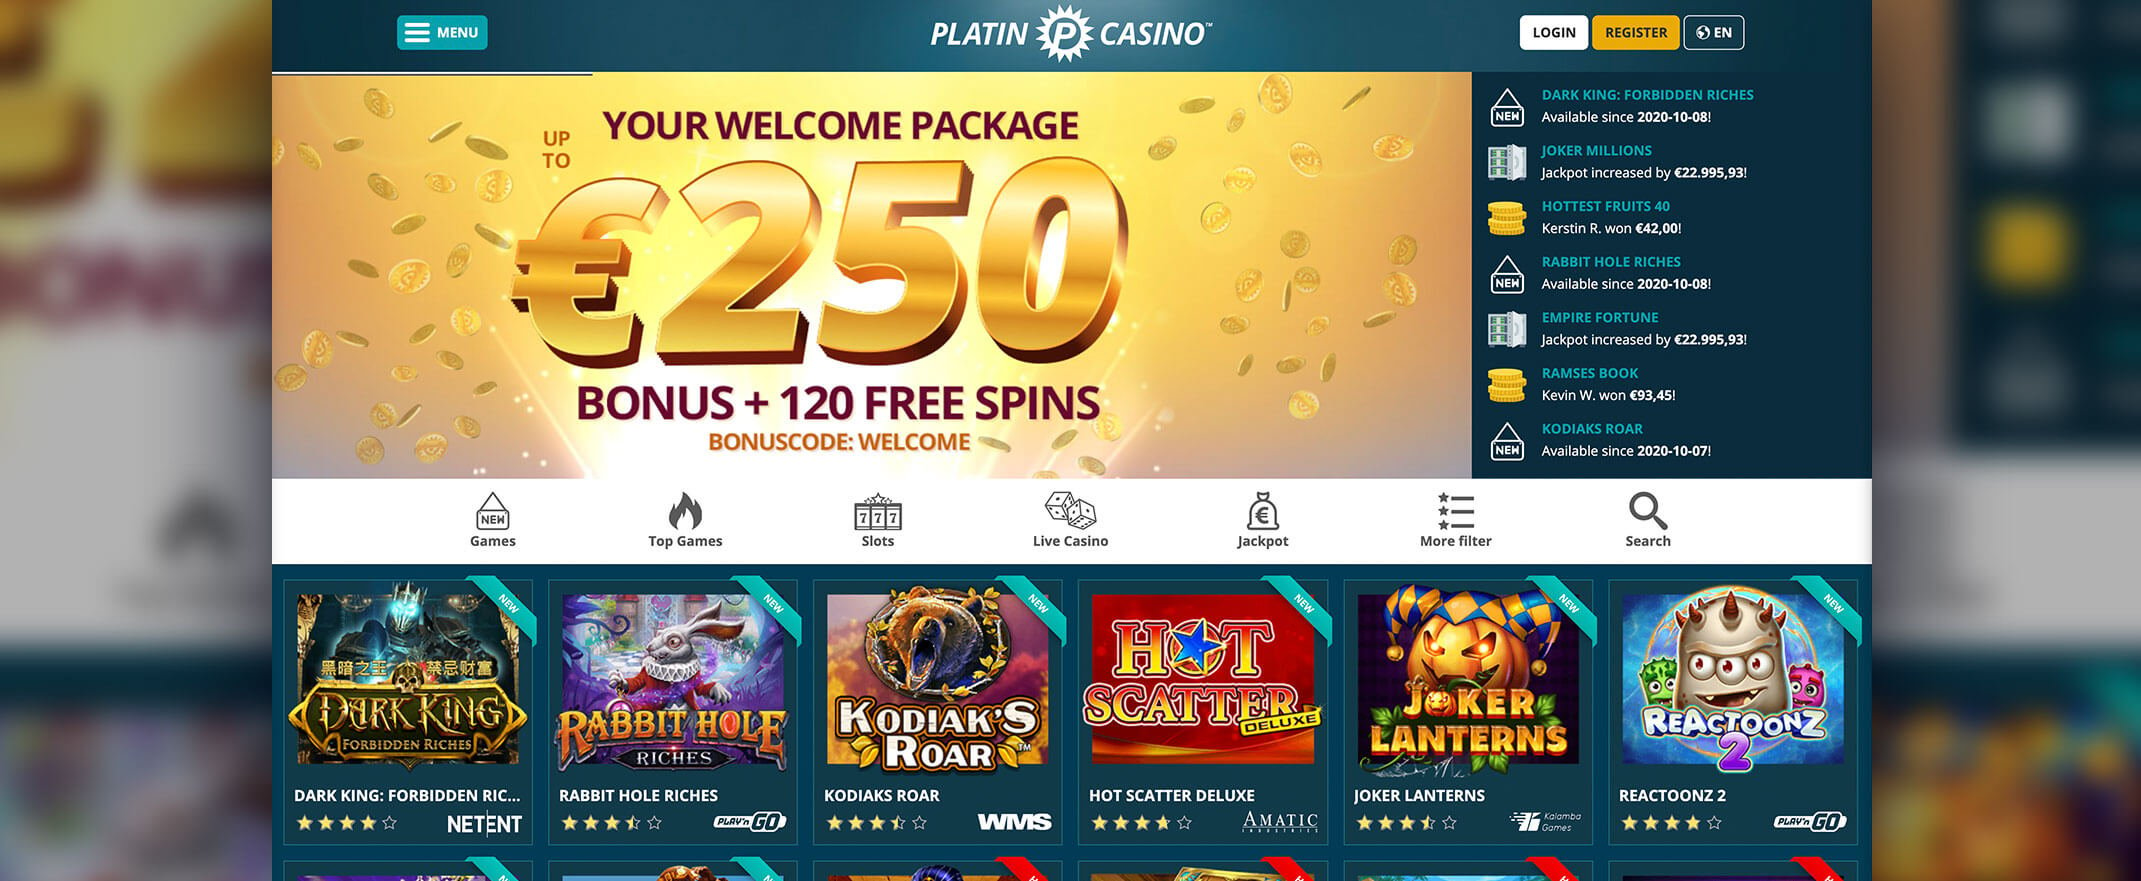 Platin casino homepage screenshot